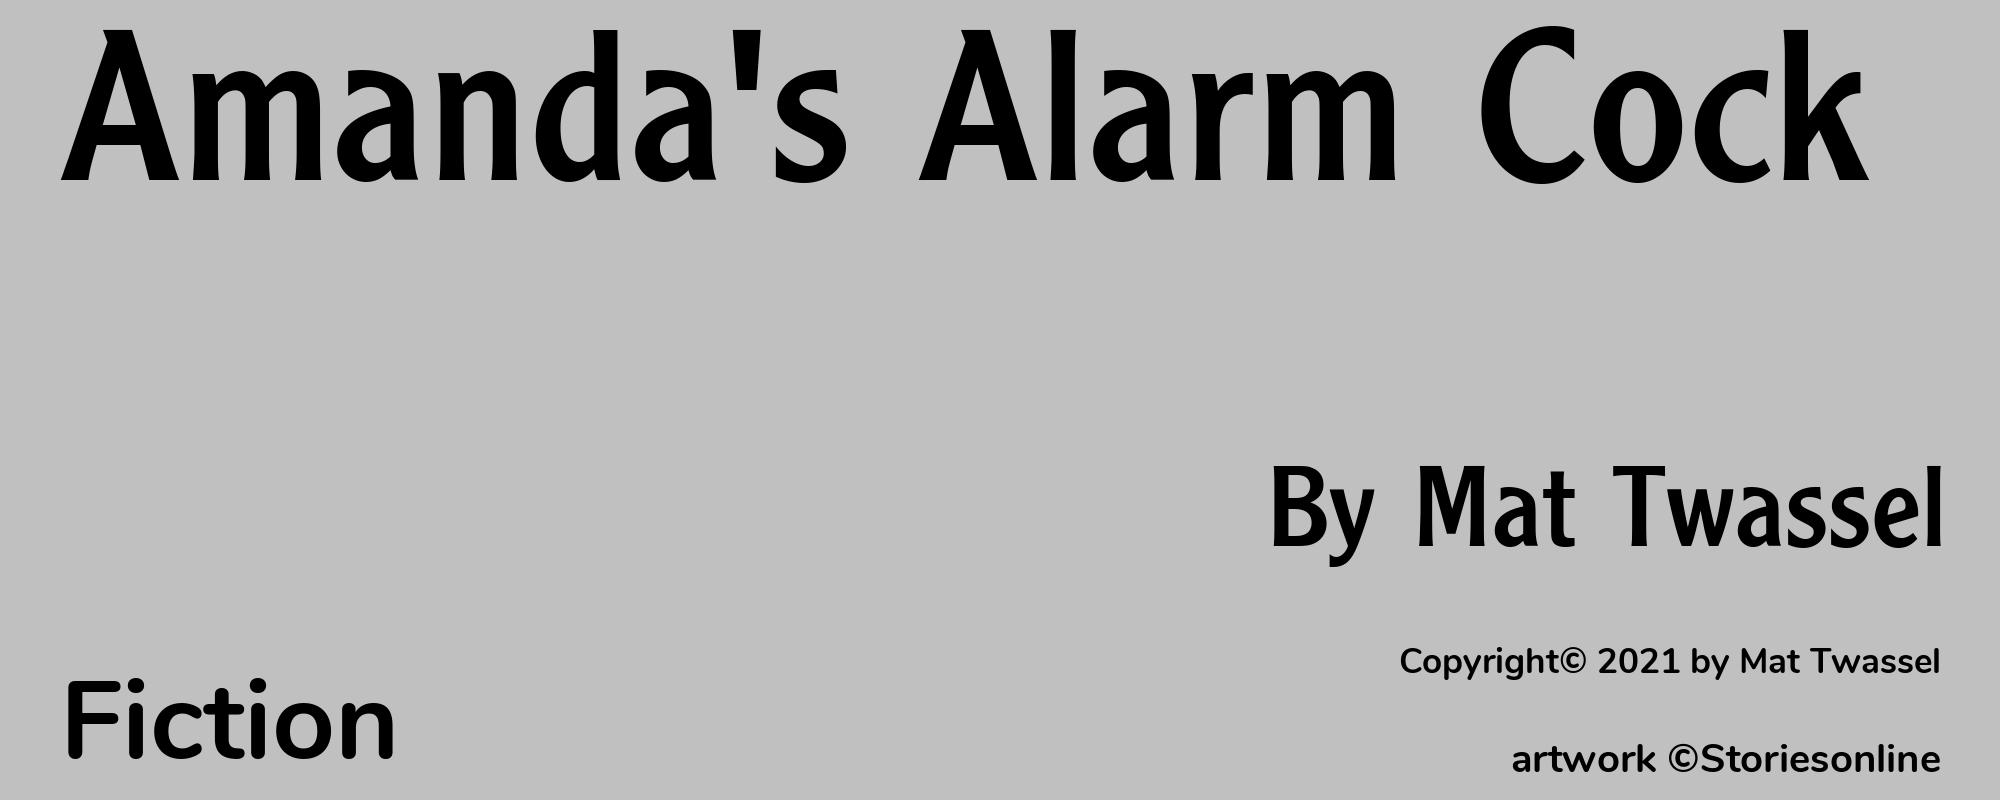 Amanda's Alarm Cock - Cover